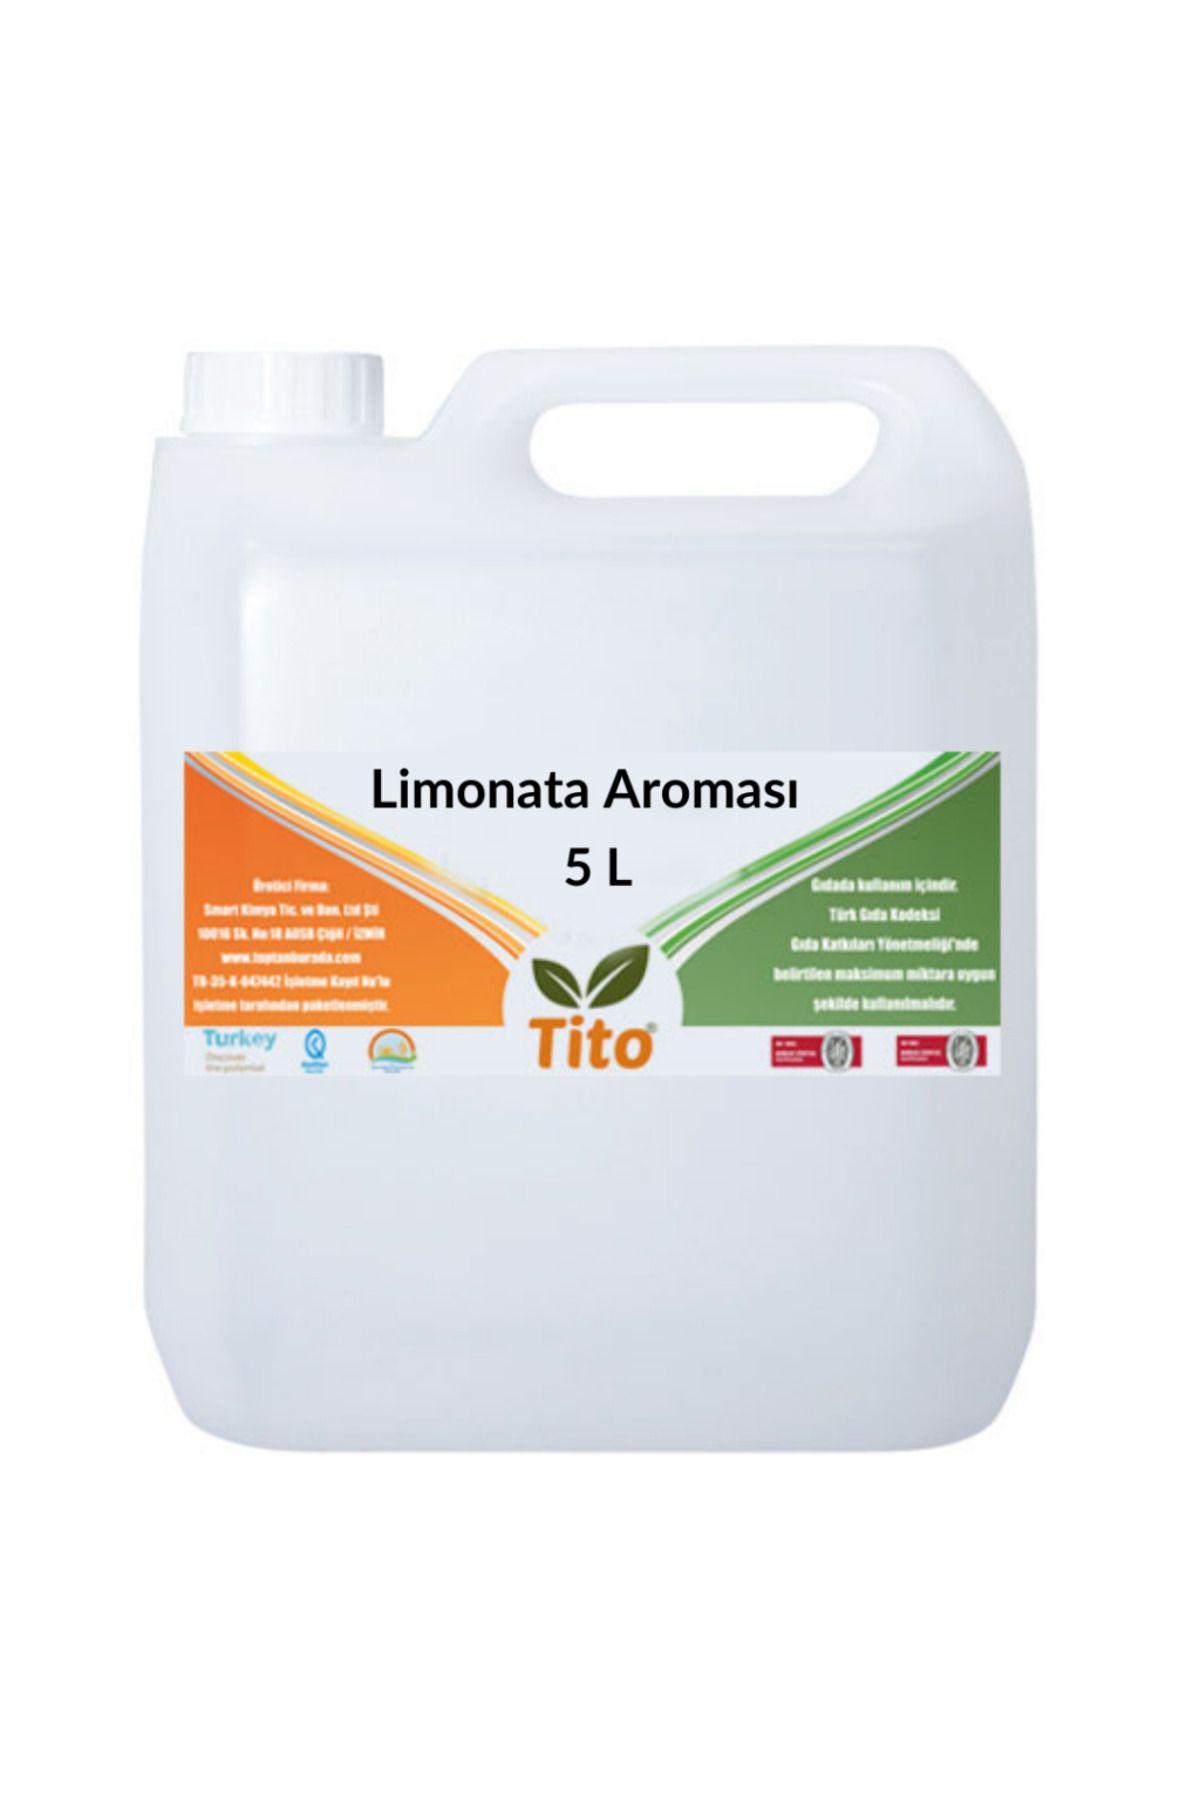 tito Limonata Aroması 5 litre